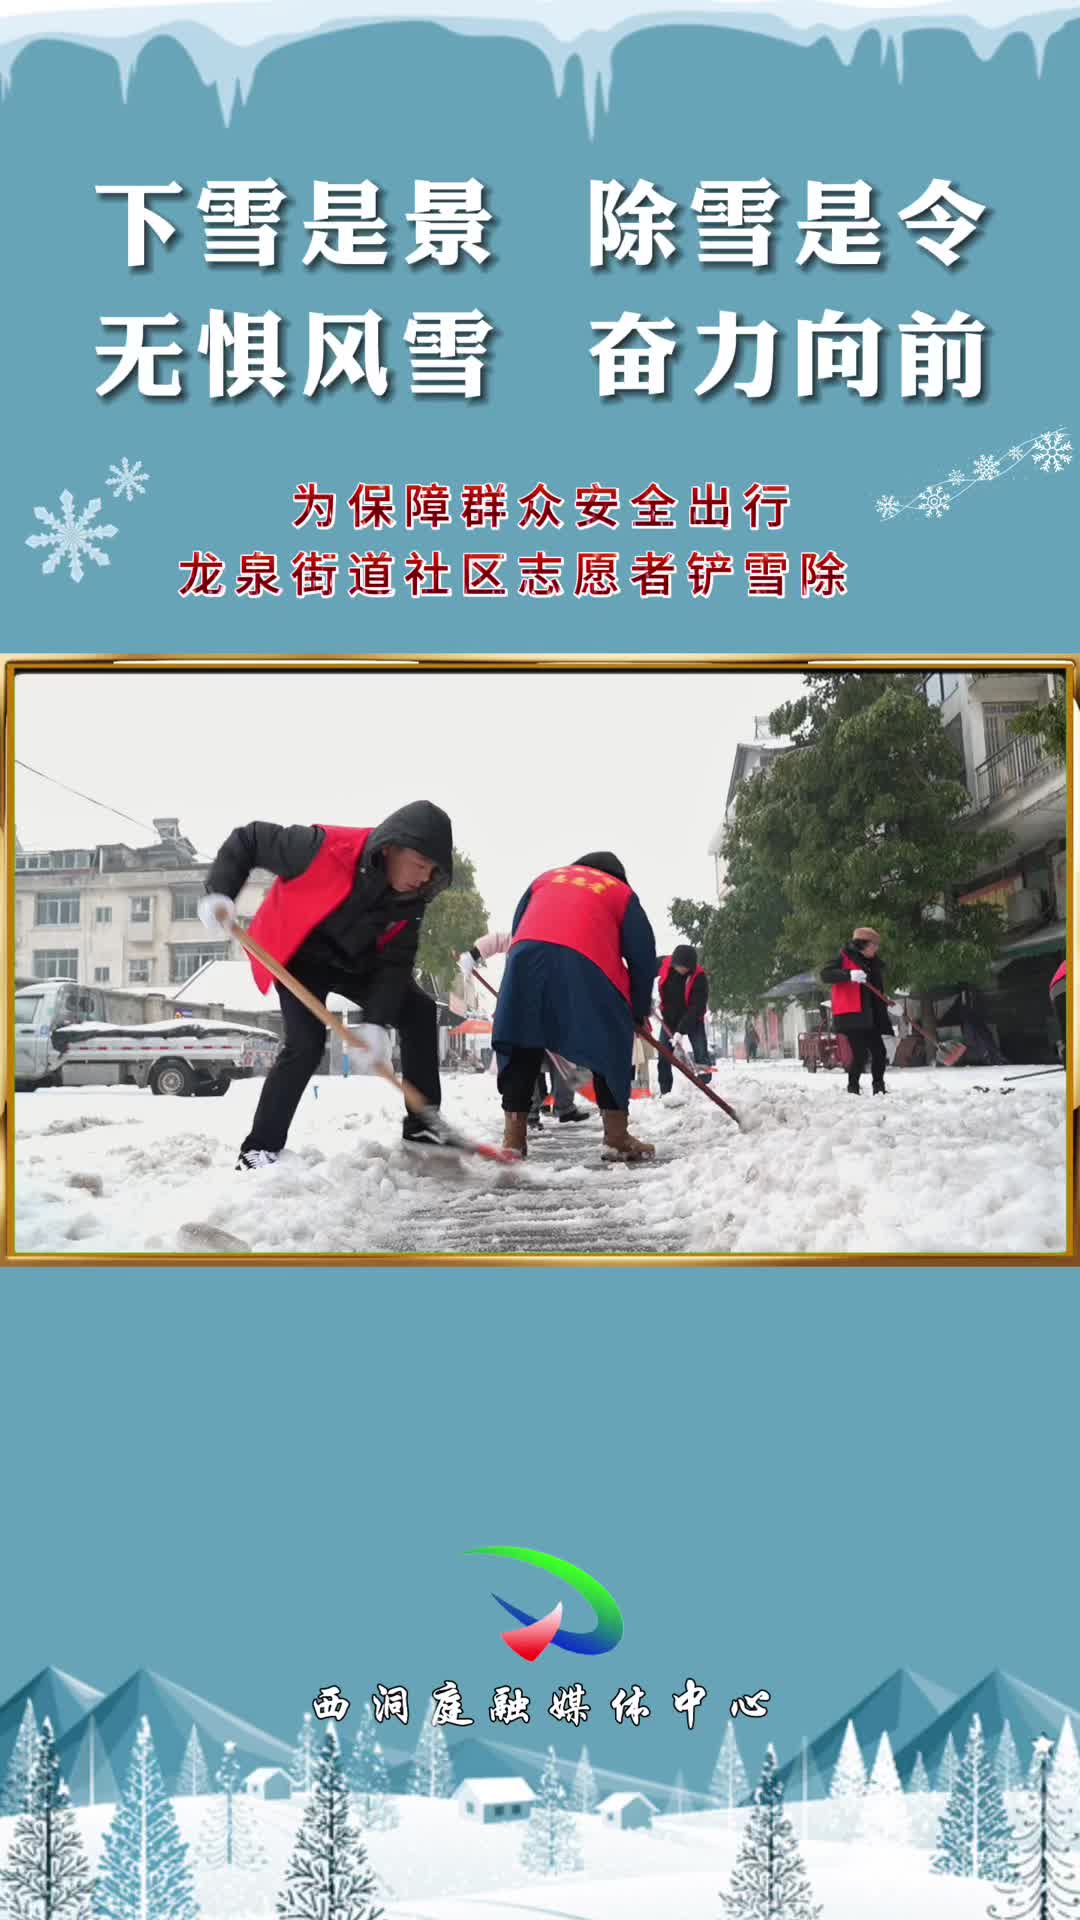 【铲雪除冰在行动】 龙泉街道：铲雪除冰保通畅 走访慰问暖民心